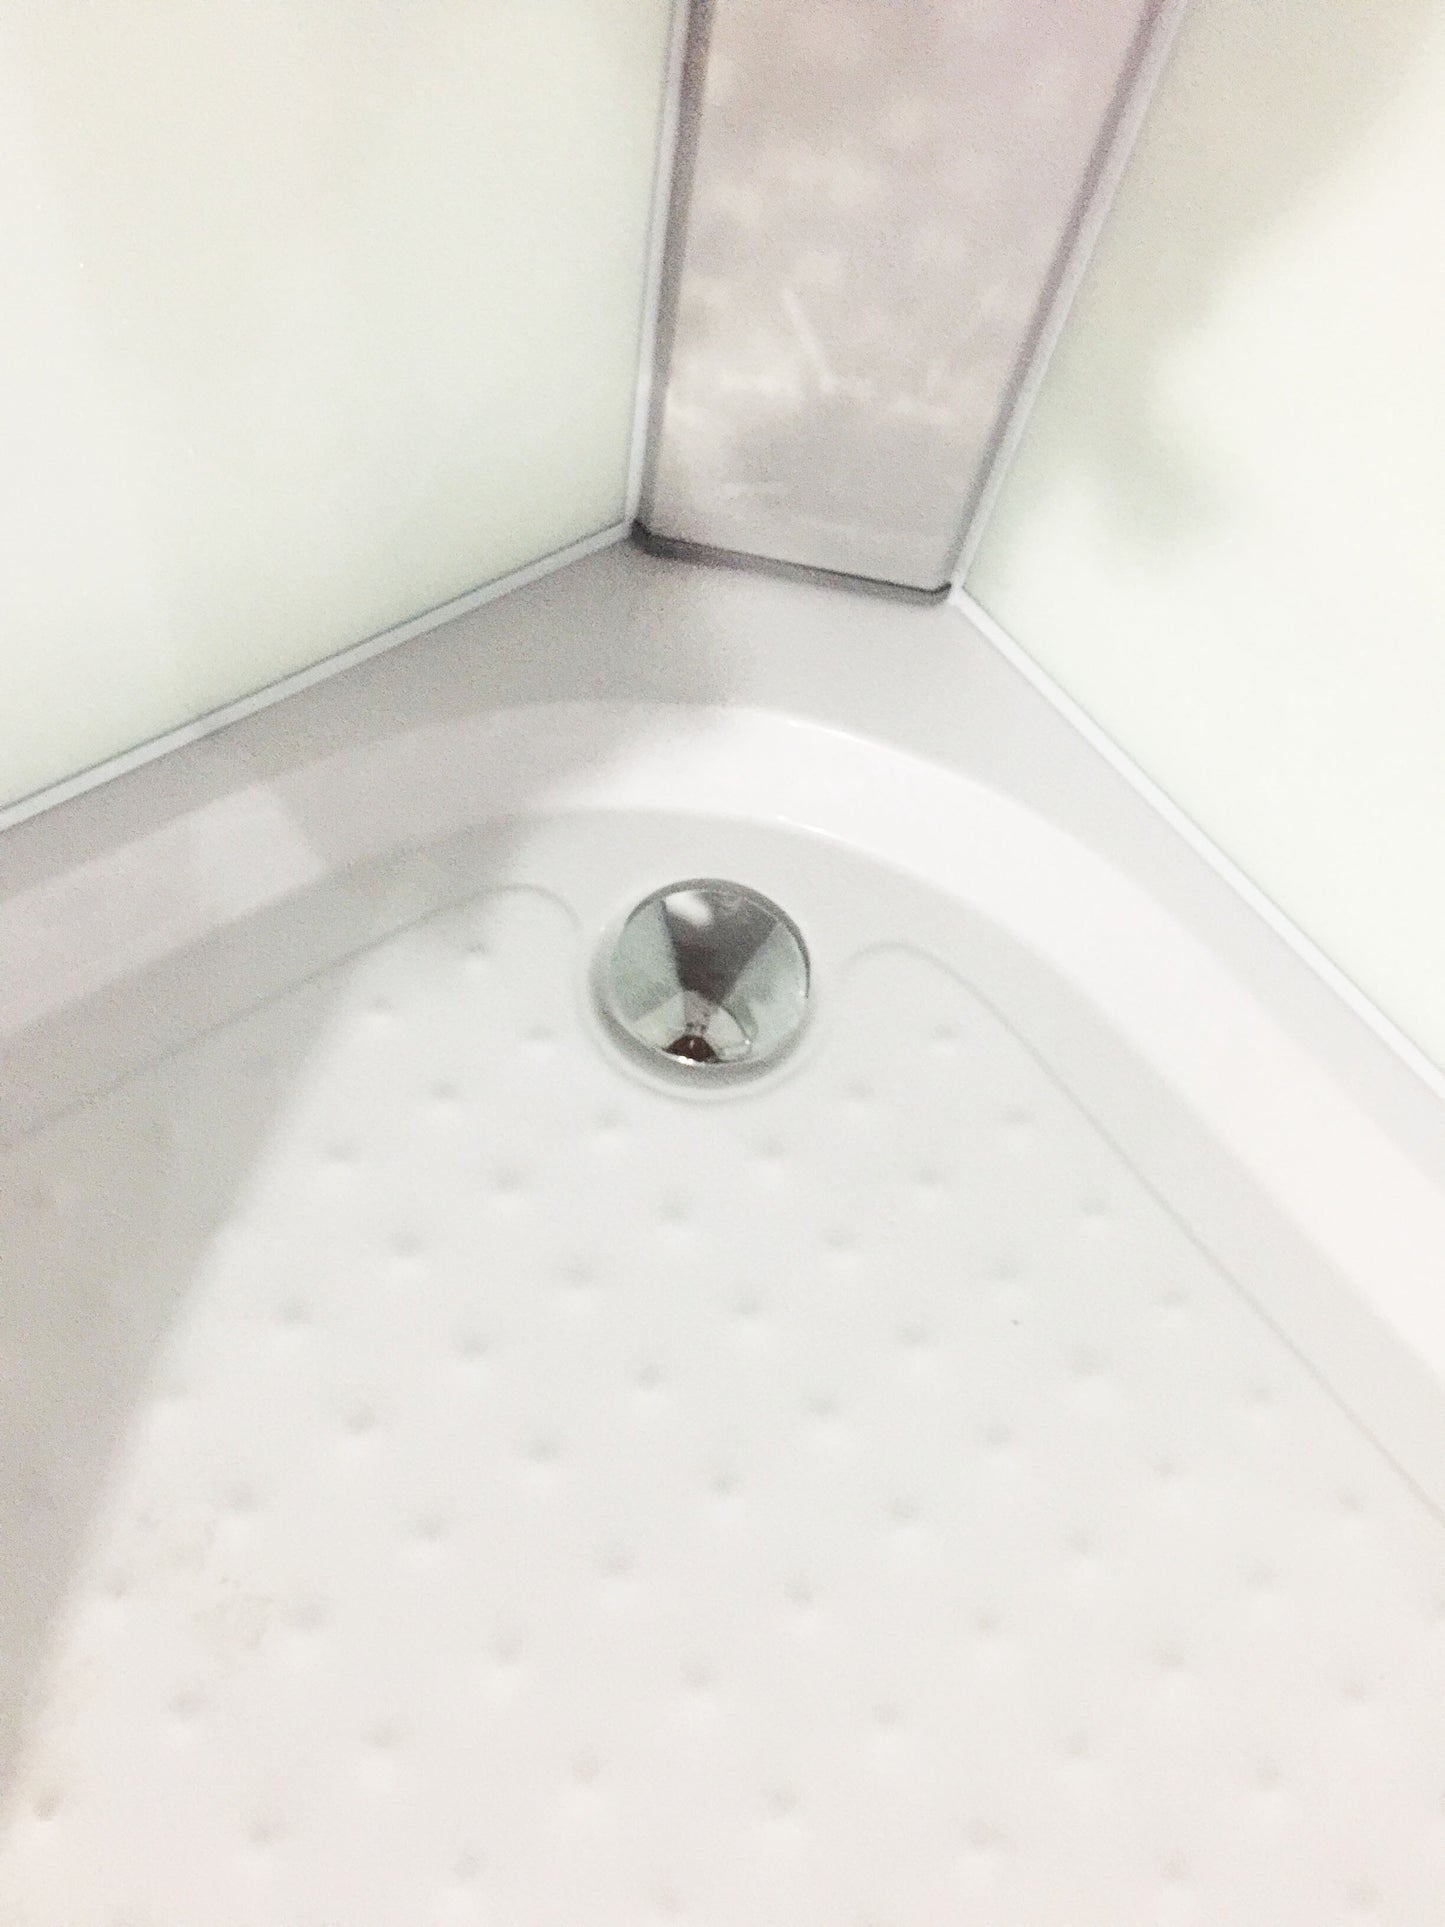 Pre-order Shower Screen Cubicle Enclosure Mixer Base Bathroom 900x900x2300mm 1806A